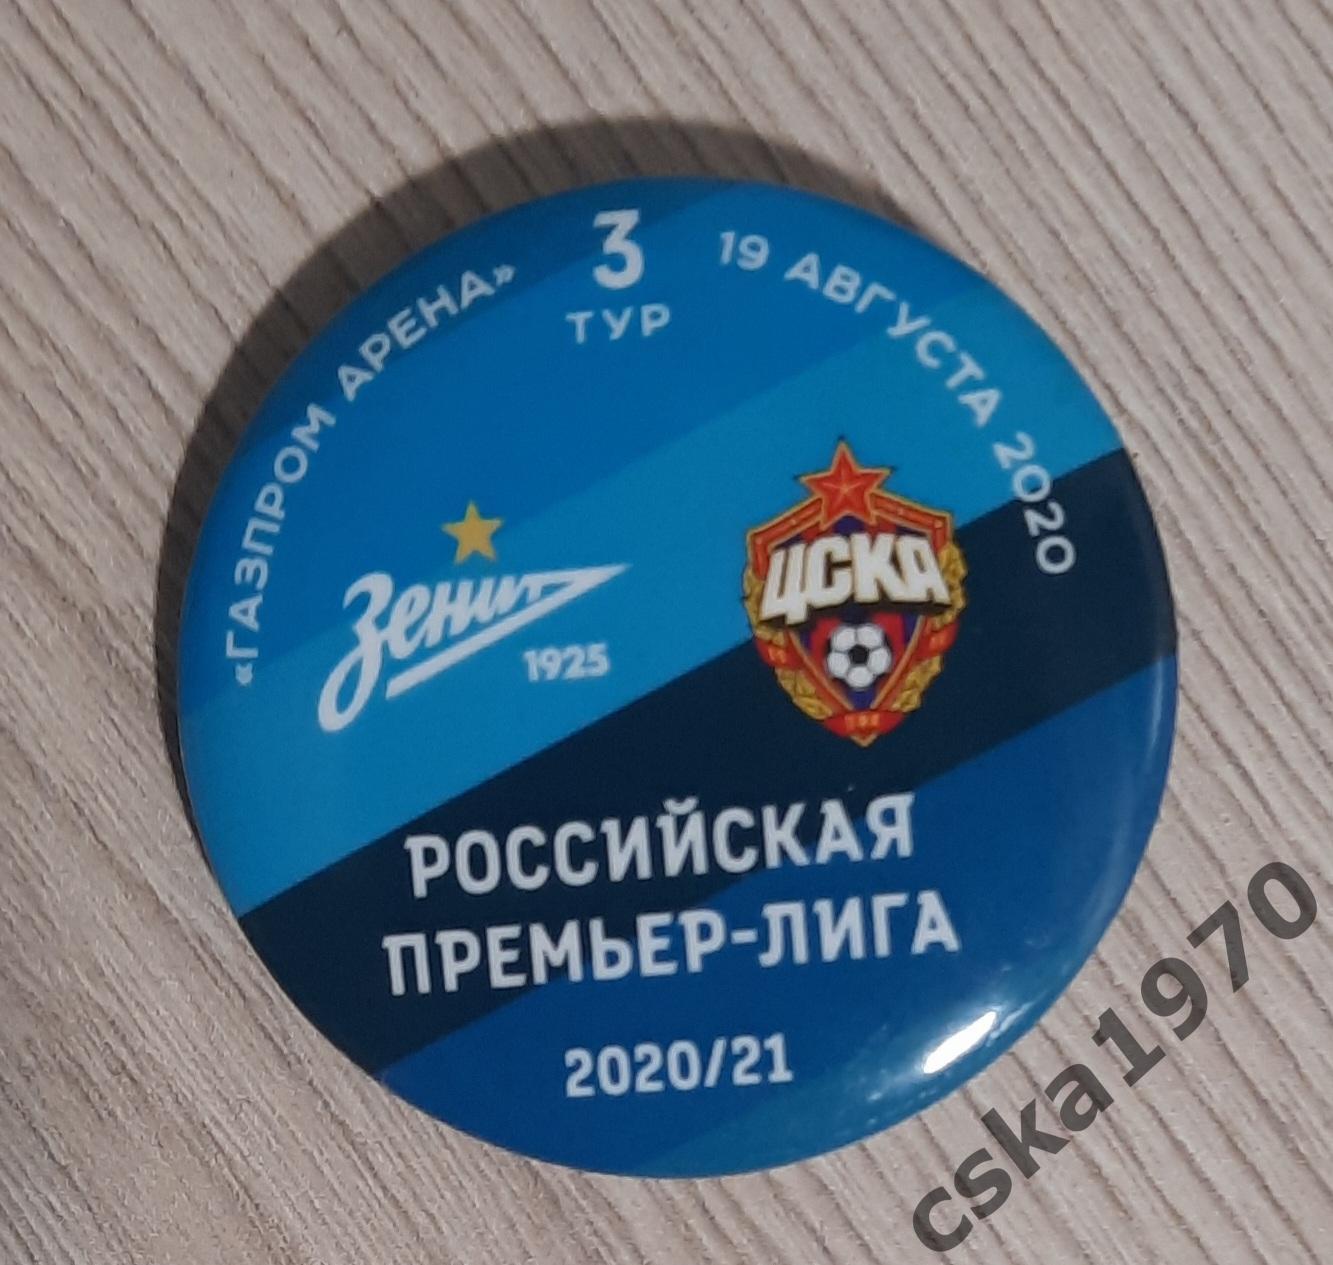 Зенит- ЦСКА 19 августа 2020